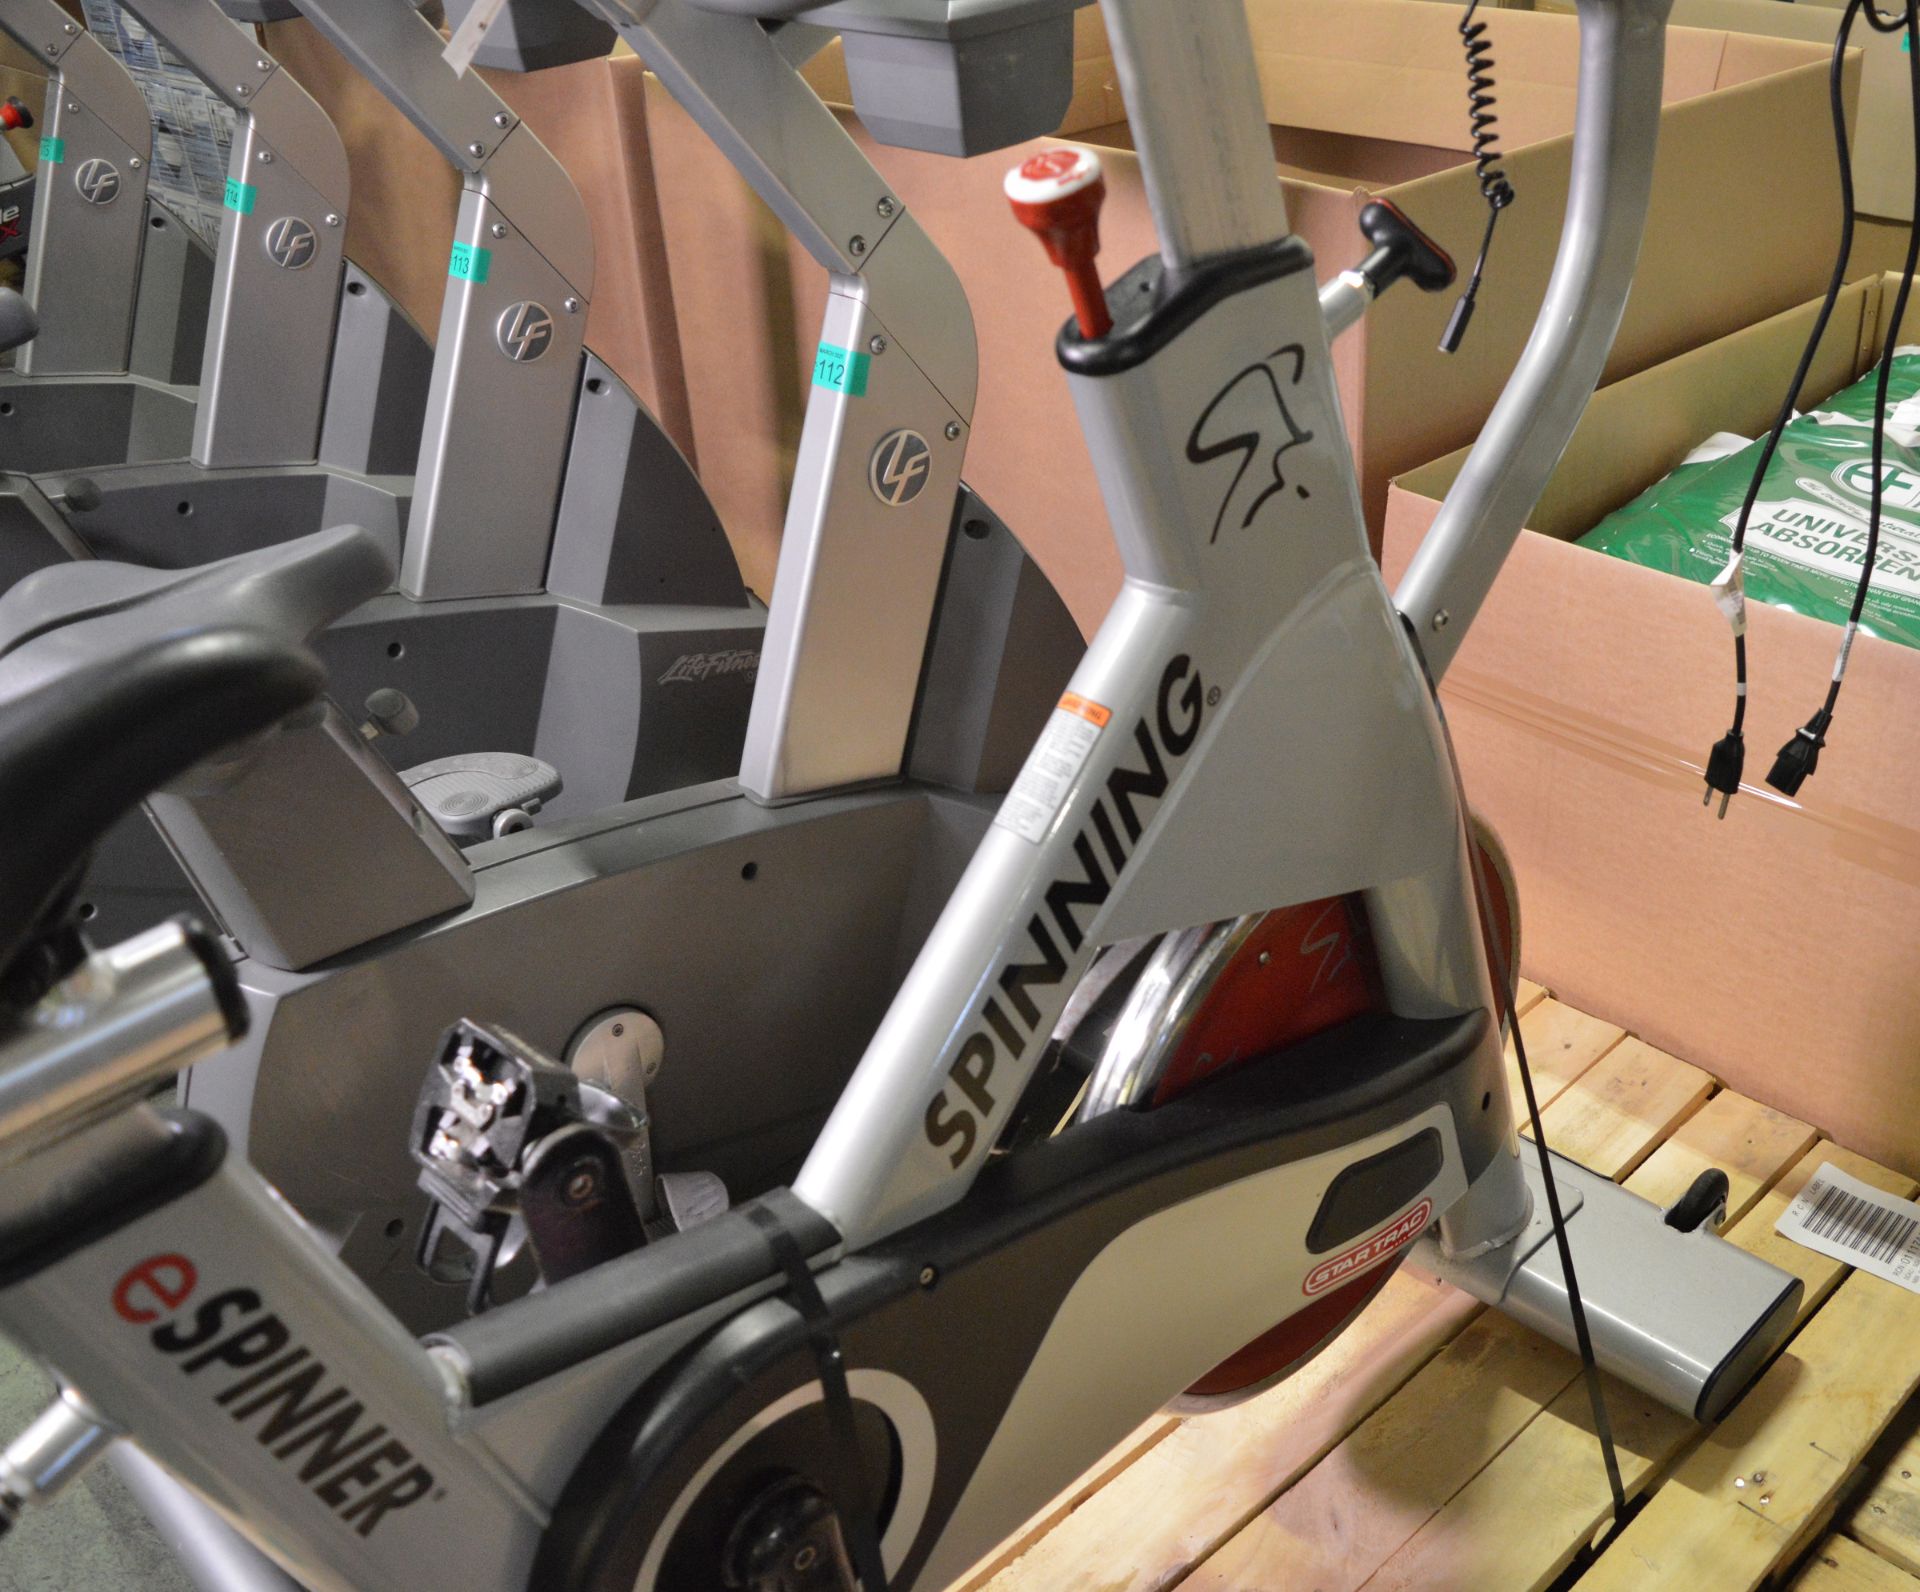 Star Trac eSpinner exercise spinner bike - 110V - Image 4 of 5